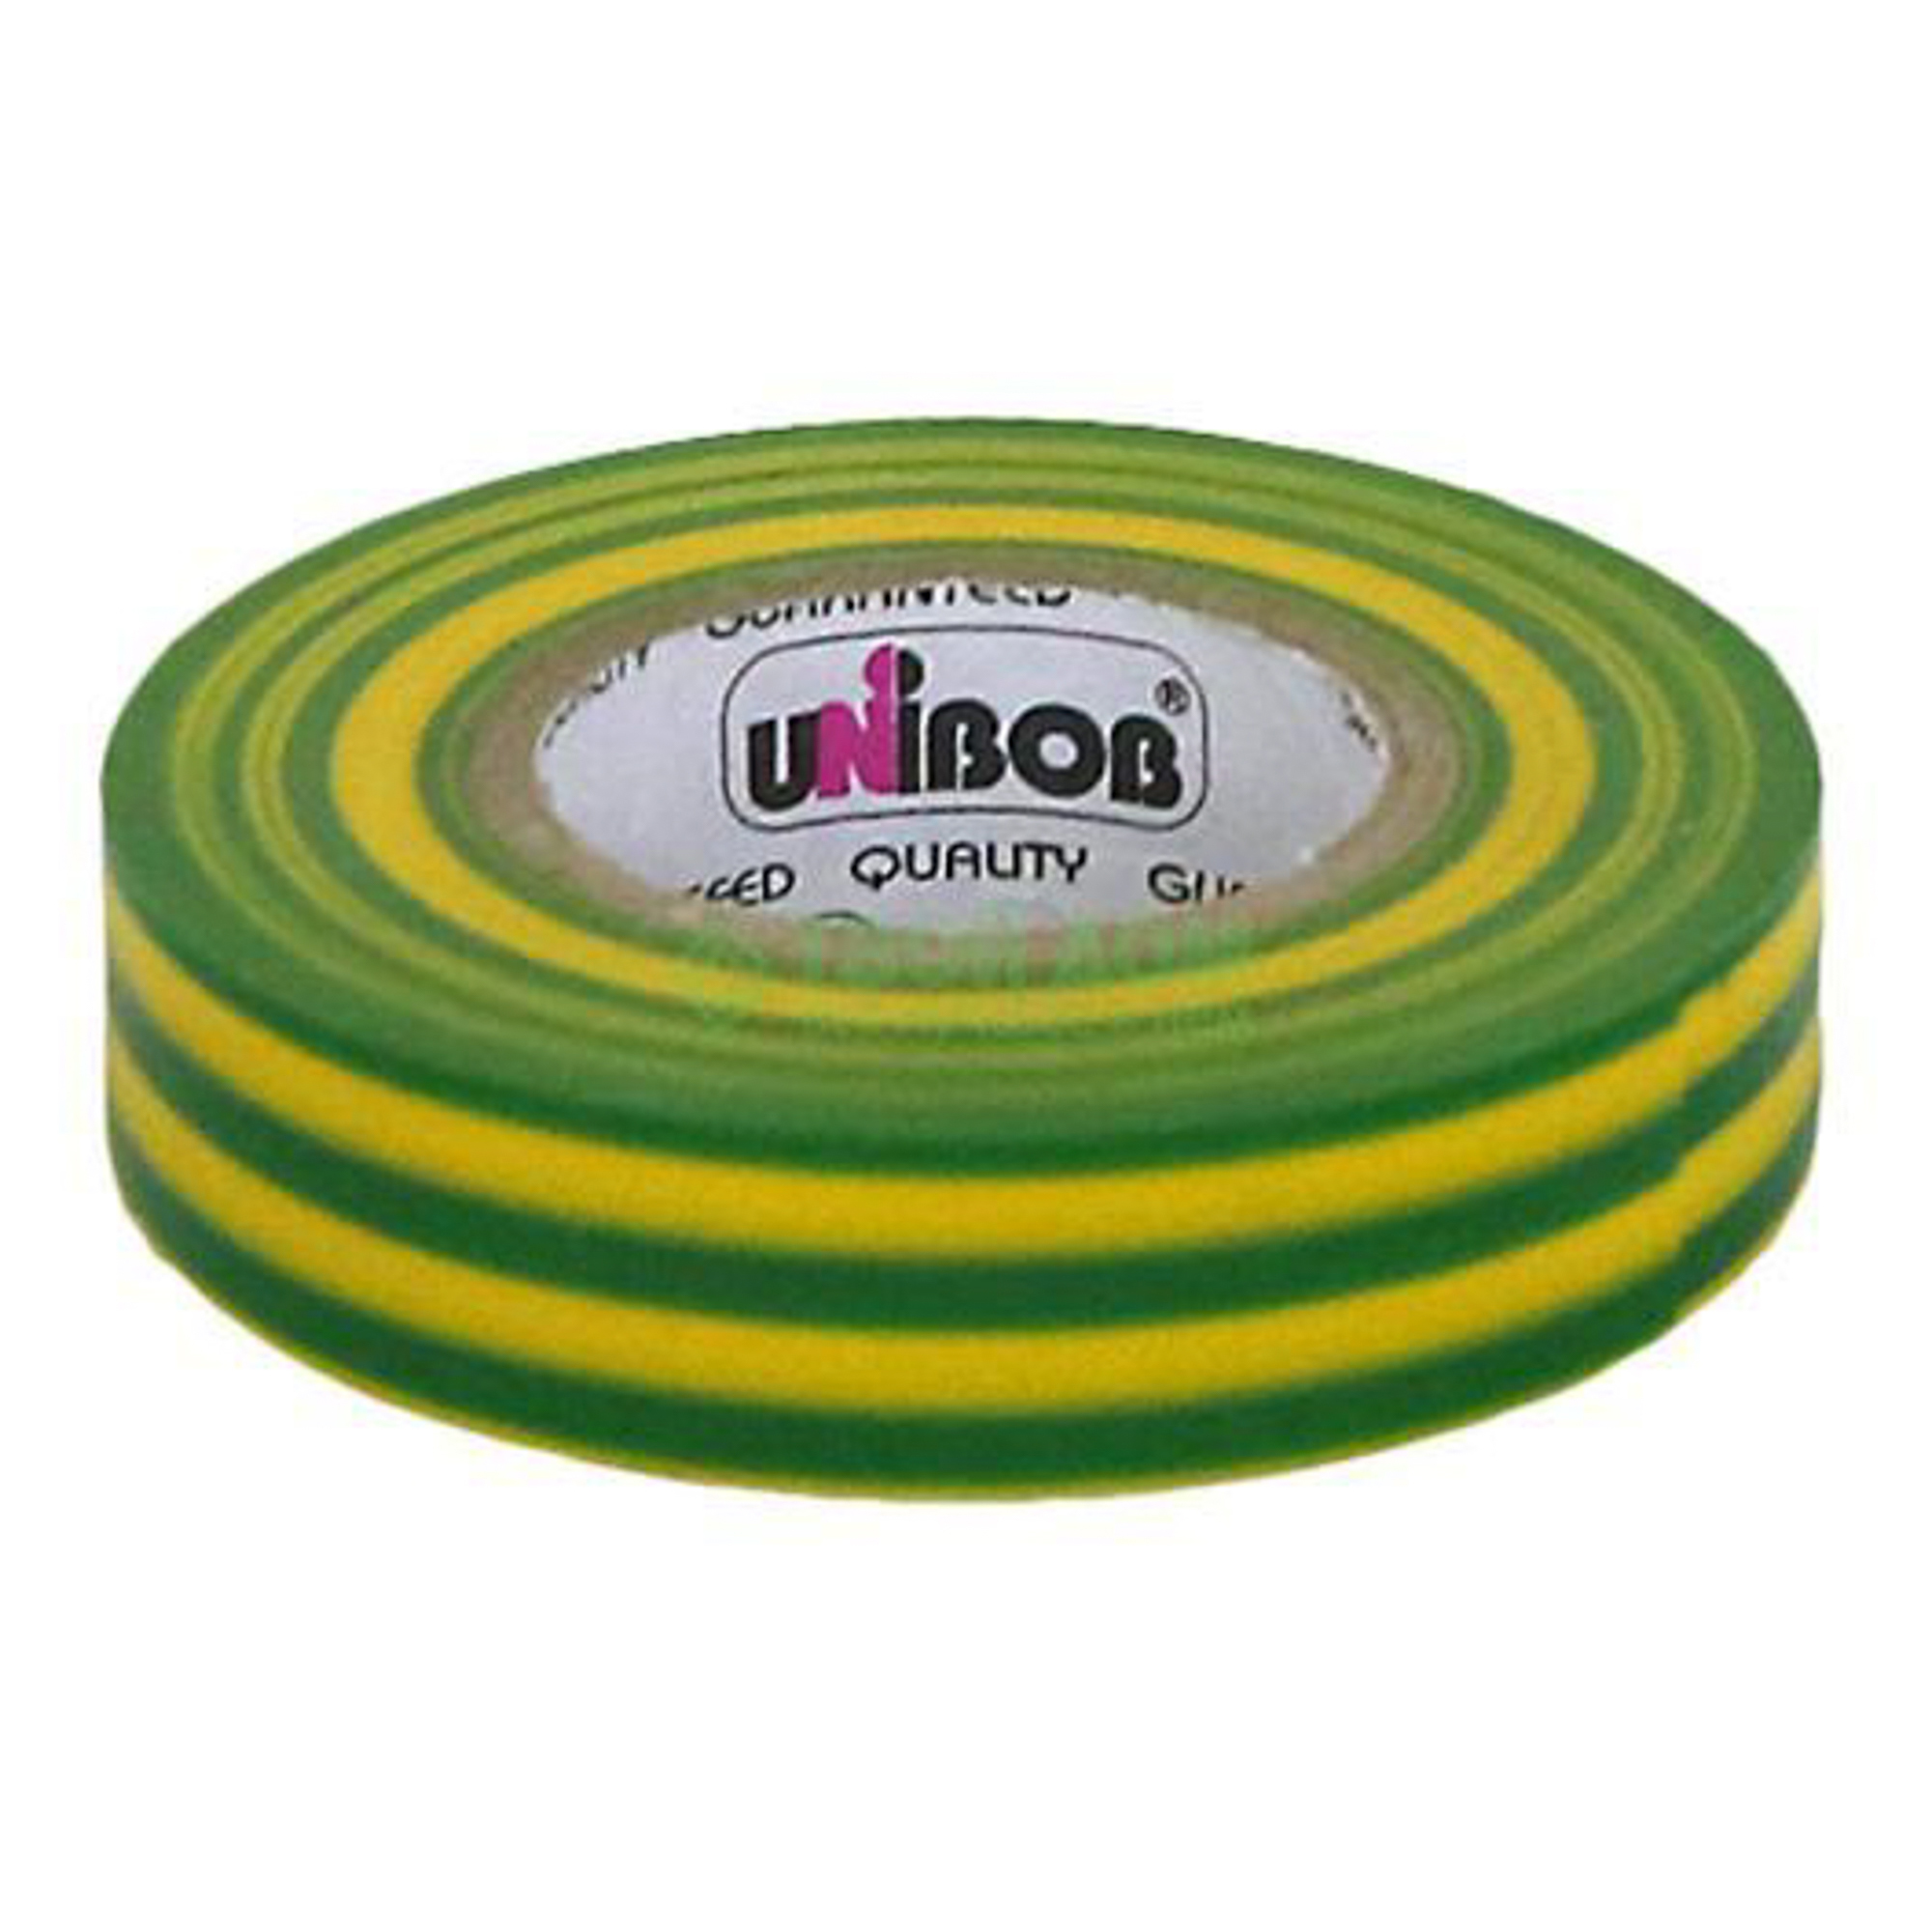 фото Изолента unibob 15mm х 20m yellow-green